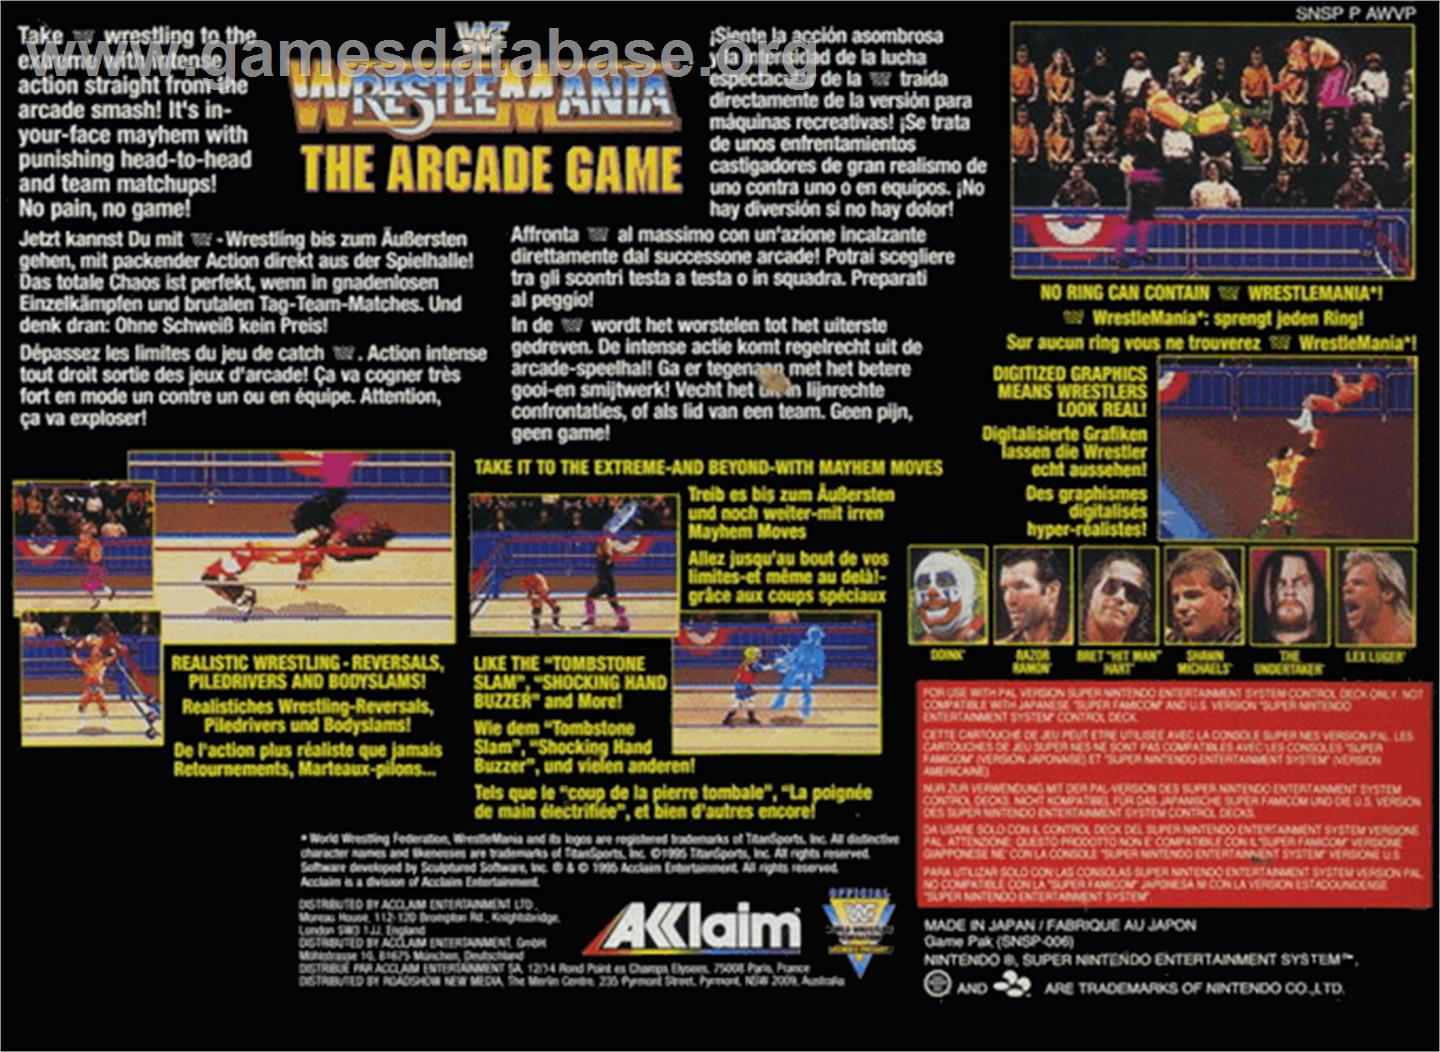 WWF Wrestlemania: The Arcade Game - Nintendo SNES - Artwork - Box Back